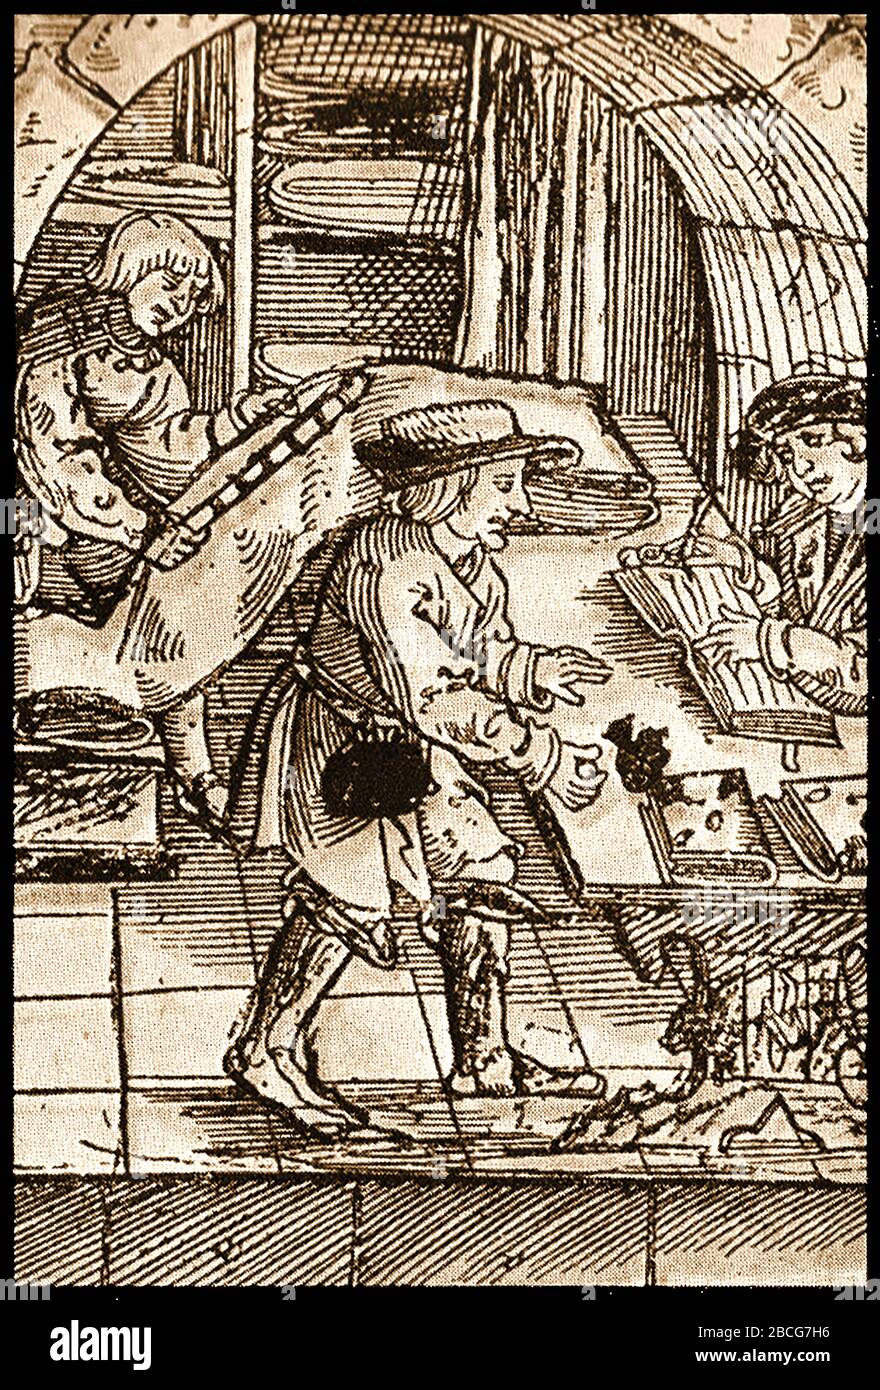 Ein alter Holzschnitt eines Tuchhändlergeschäftes aus dem 16. Jahrhundert in England. Weil das Tuch teuer war, waren die meisten Geschäfte (Wäschereien) im Besitz von Händlern, die ein Tuch oder eine Wollfabrik besaßen oder betrieben, oder die Großhändler waren, die das Geschäft importierten oder ausführten. Ein Tuchhändler könnte auch eine Reihe von Drapergeschäften besessen haben. Kaufleute waren oft sehr wohlhabend und wurden Bankiers. (Z. B. die Medicis und die Berenberger) Stockfoto